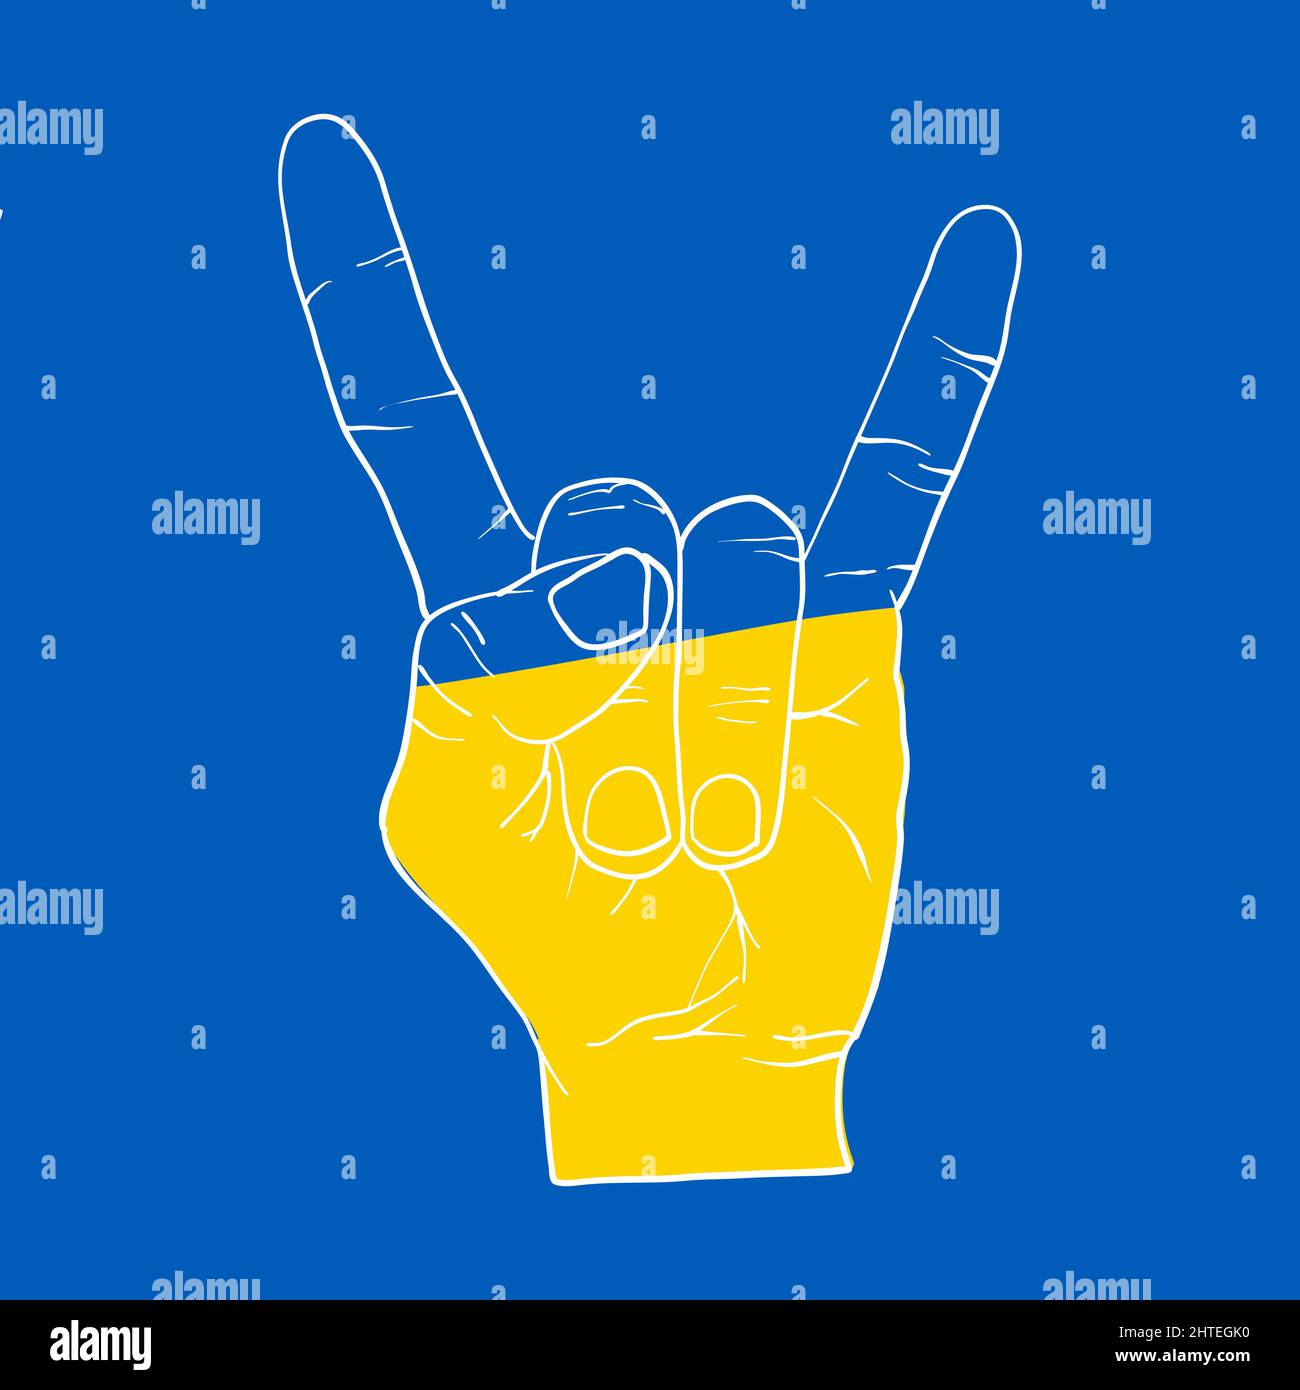 Devil Hand Zeichen für ukrainische Truppen. Symbol für die Unterstützung der Menschen in Kiew und der Ukraine. Gemeinsam stark bleiben. Patriotisches Symbol, Icon.-SupplementalCategories+= Stock Vektor